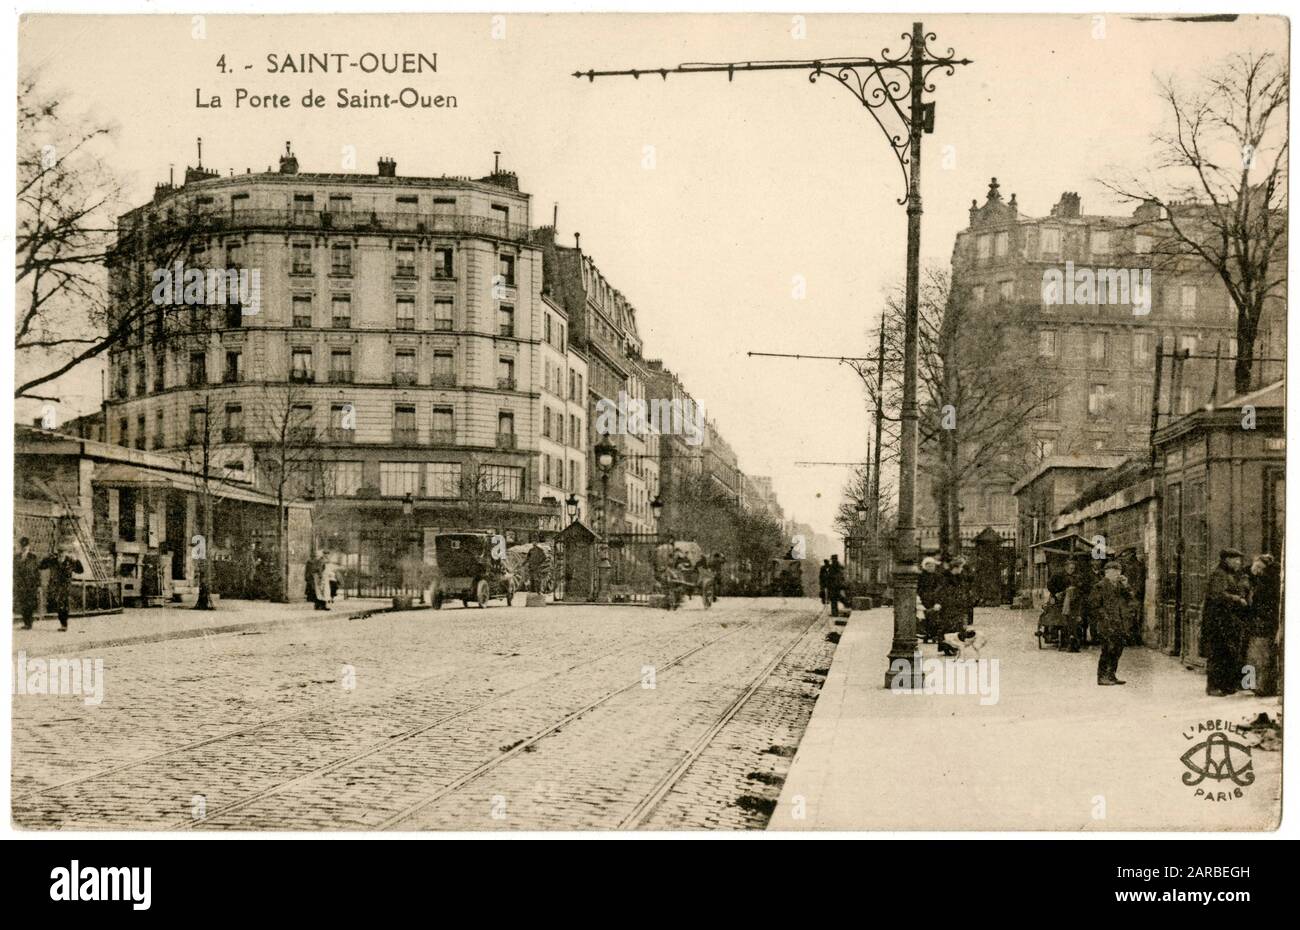 La Porte de St Ouen, an der Grenze des 17. Und 18. Arrondissements, Paris, Frankreich. Es war ein Tor in der Thiers-Mauer aus dem 19. Jahrhundert und gab auch einer Metrostation ihren Namen (1911 eröffnet). Stockfoto